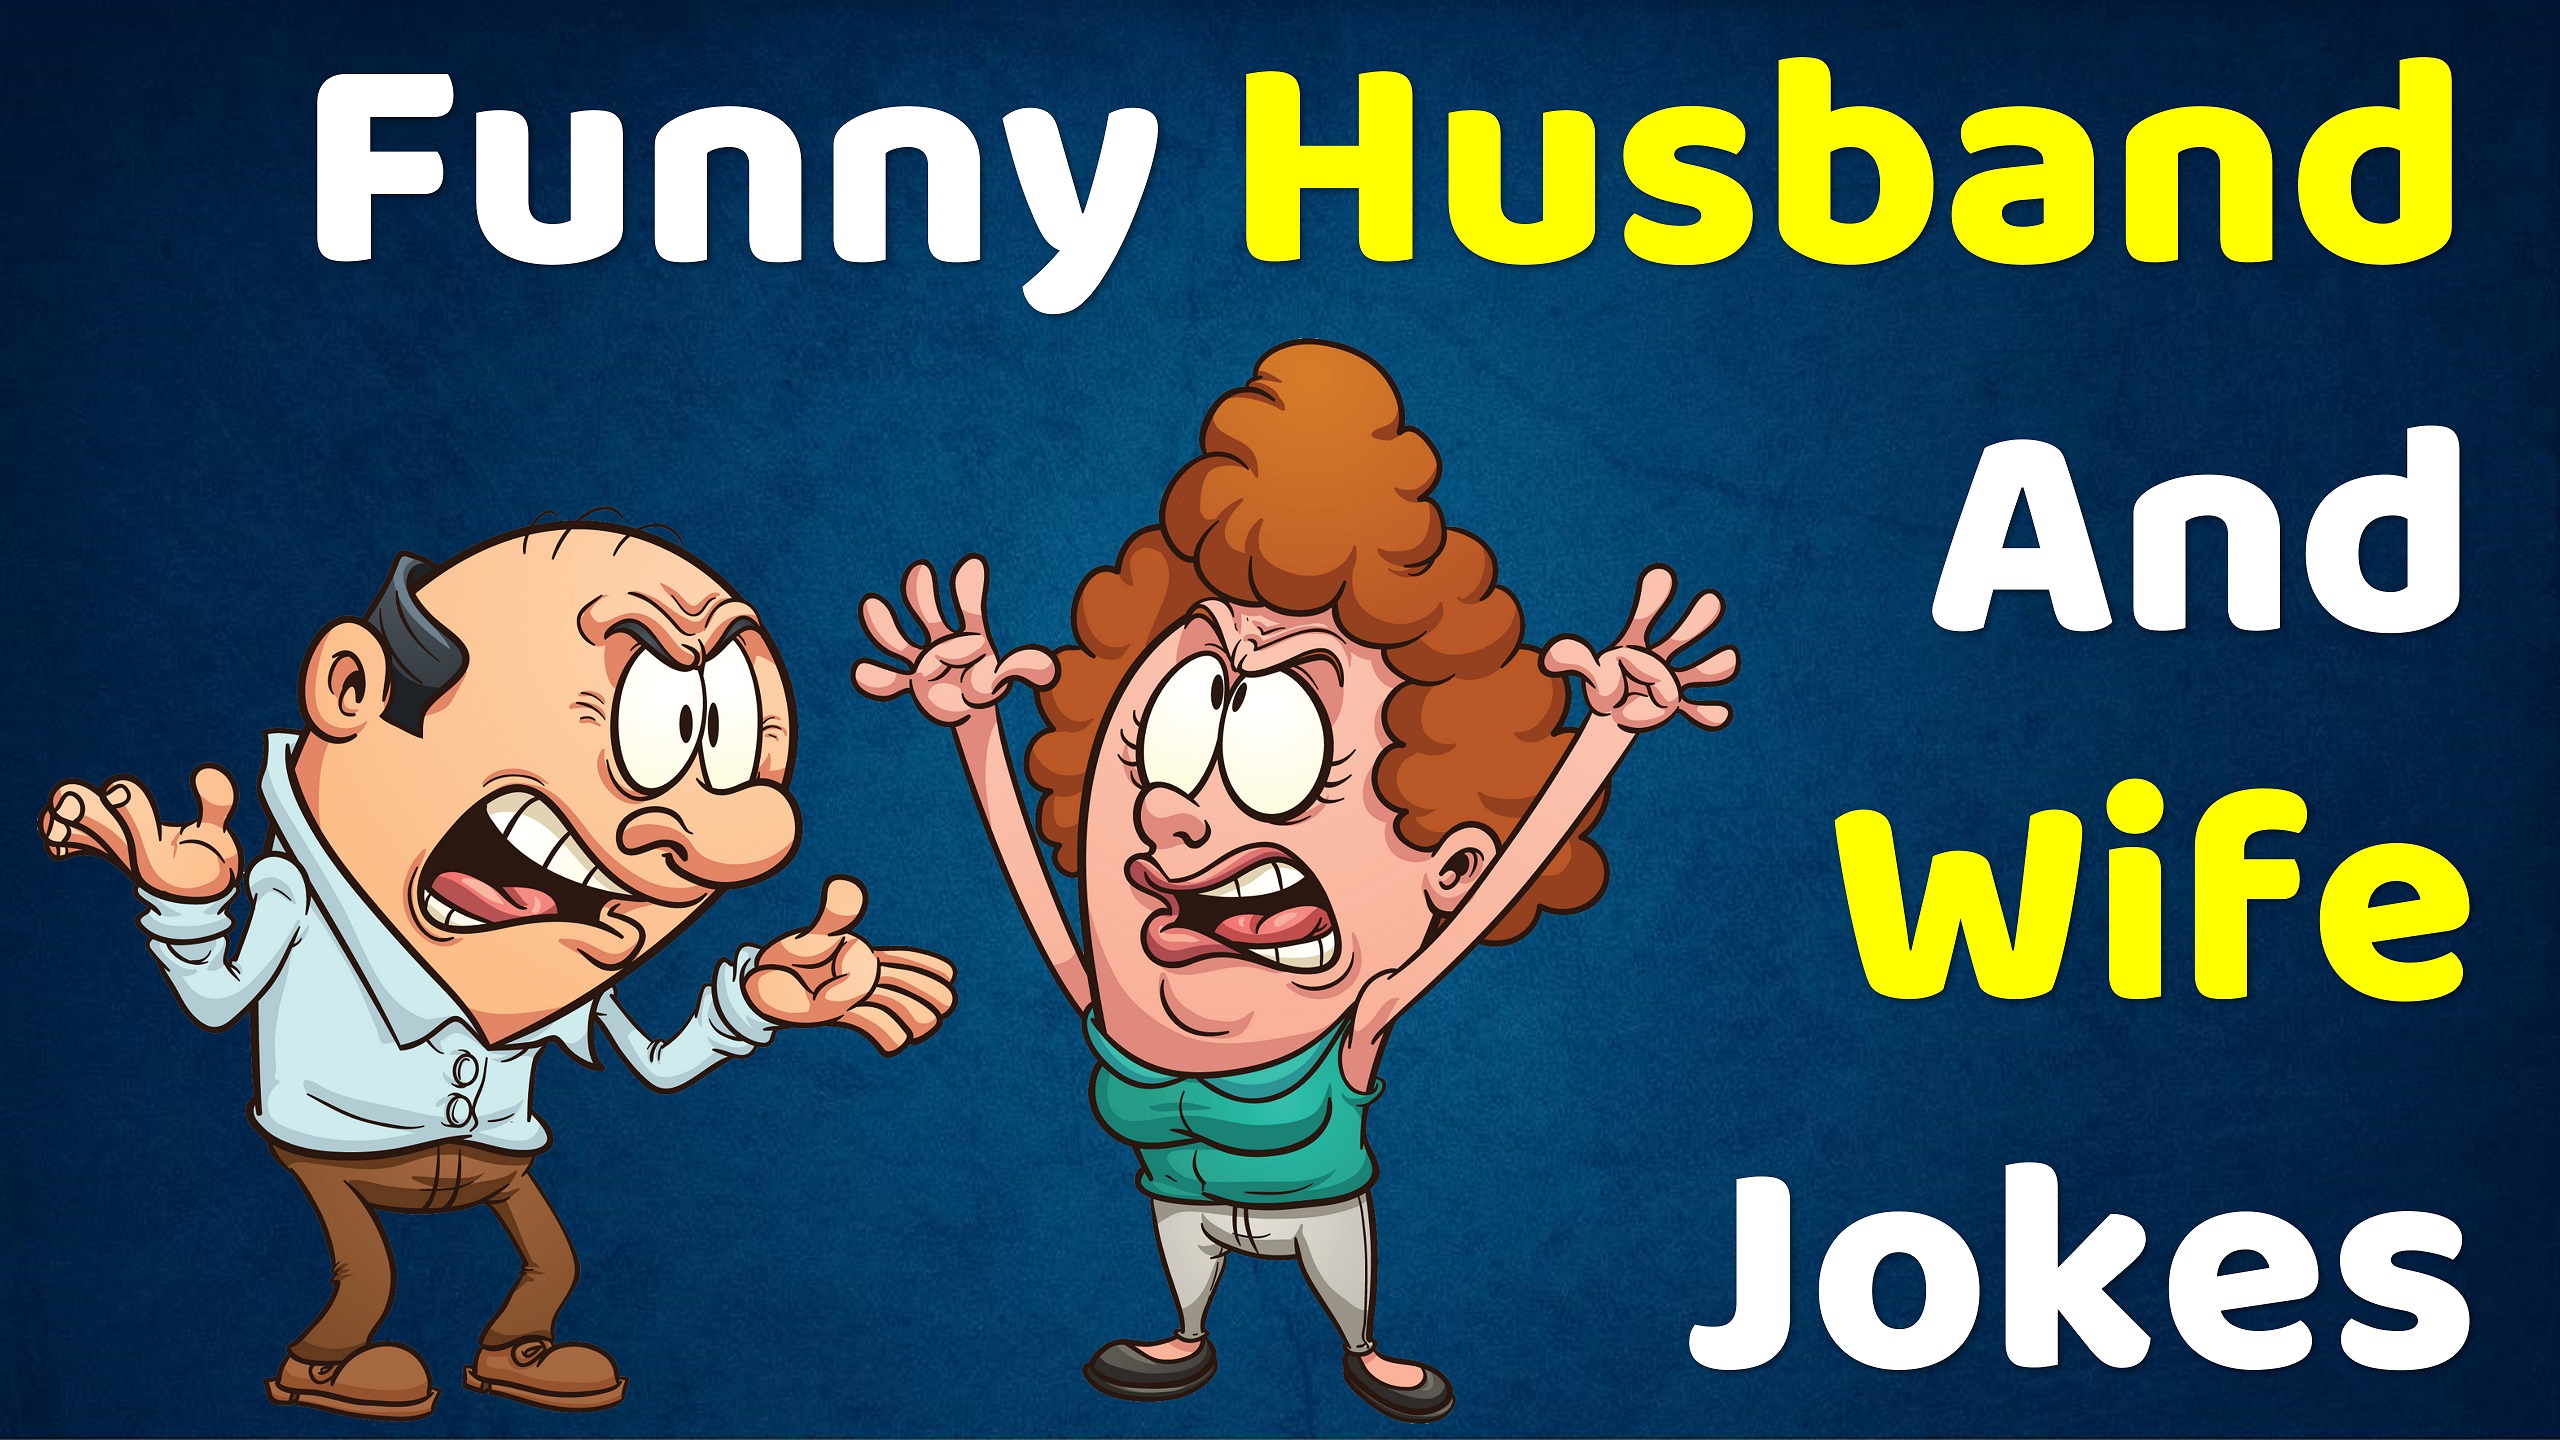 Husband wife jokes, Funny jokes, Comedy Jokes, Funny jokes in english